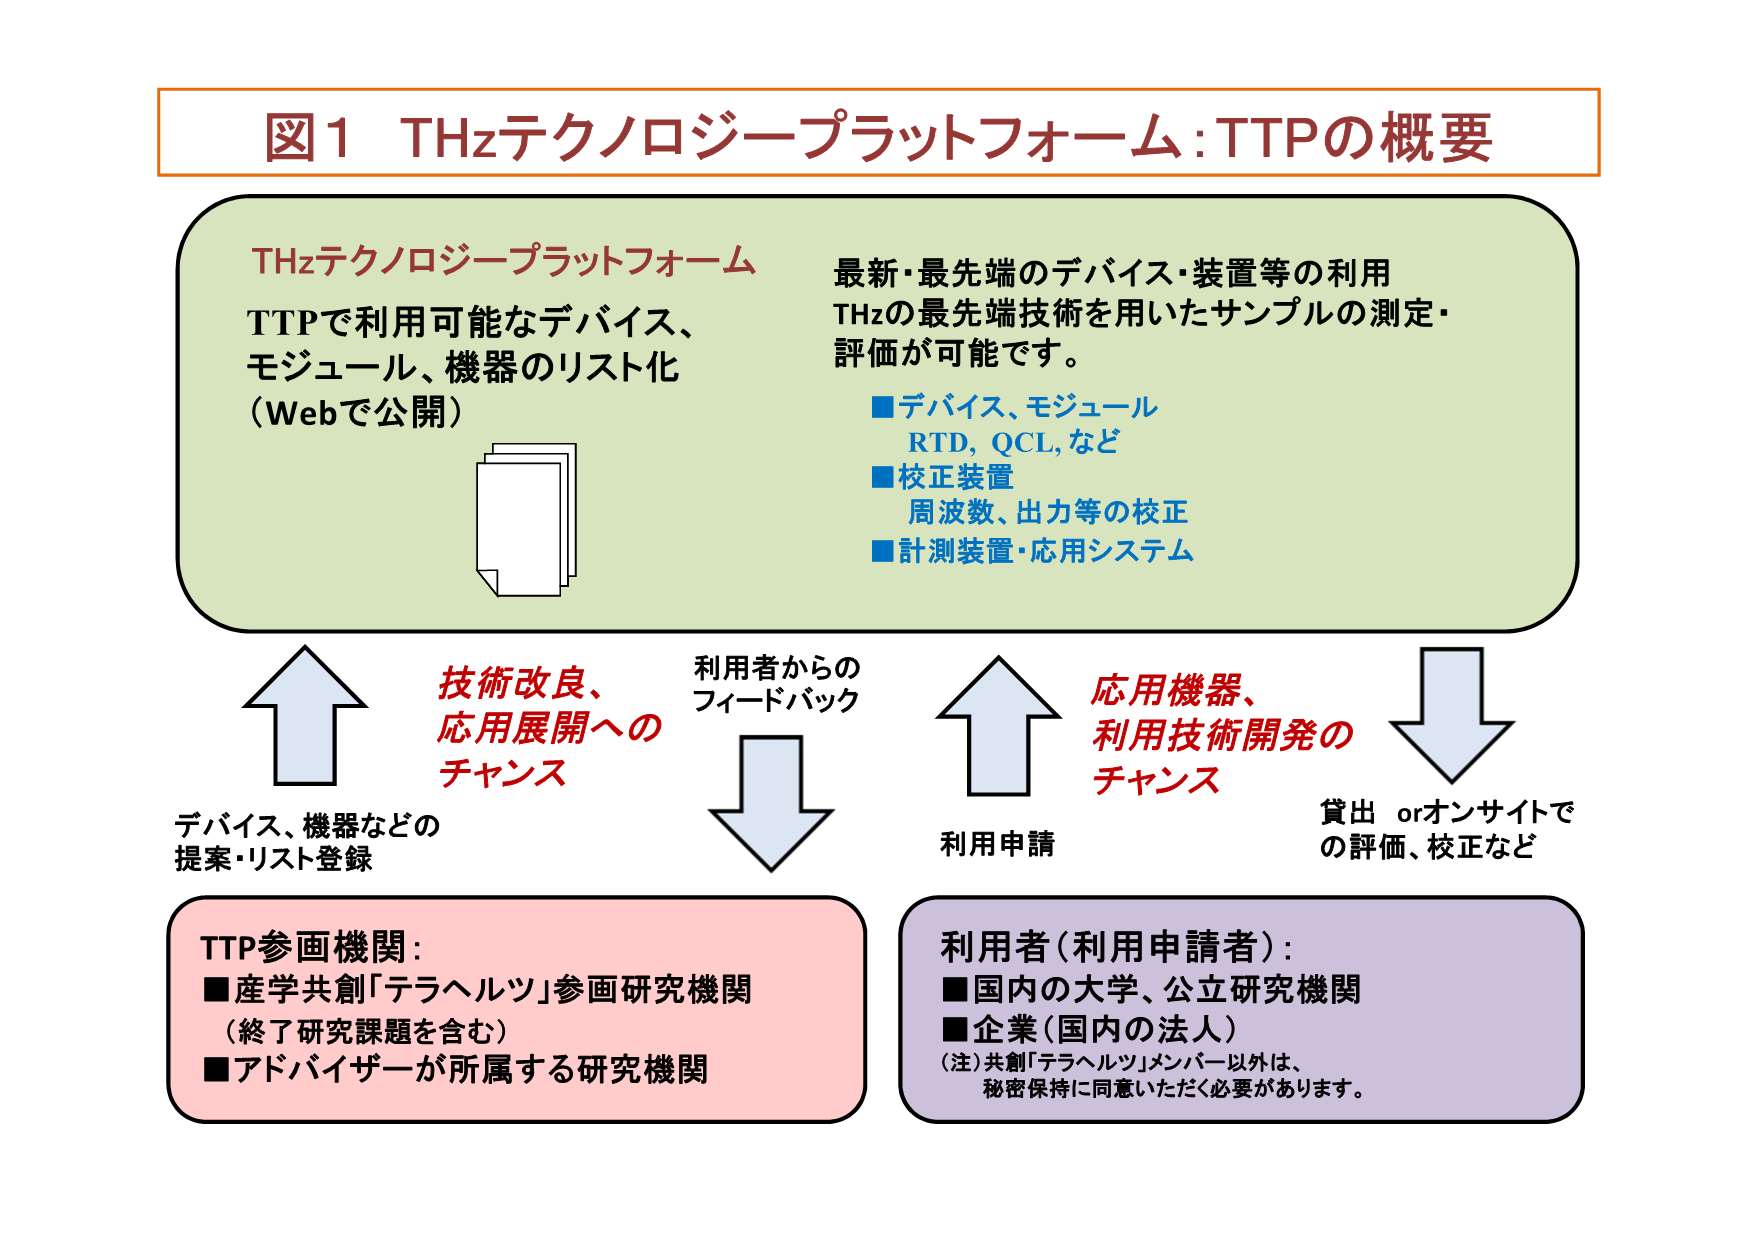 図1 TTPの概要